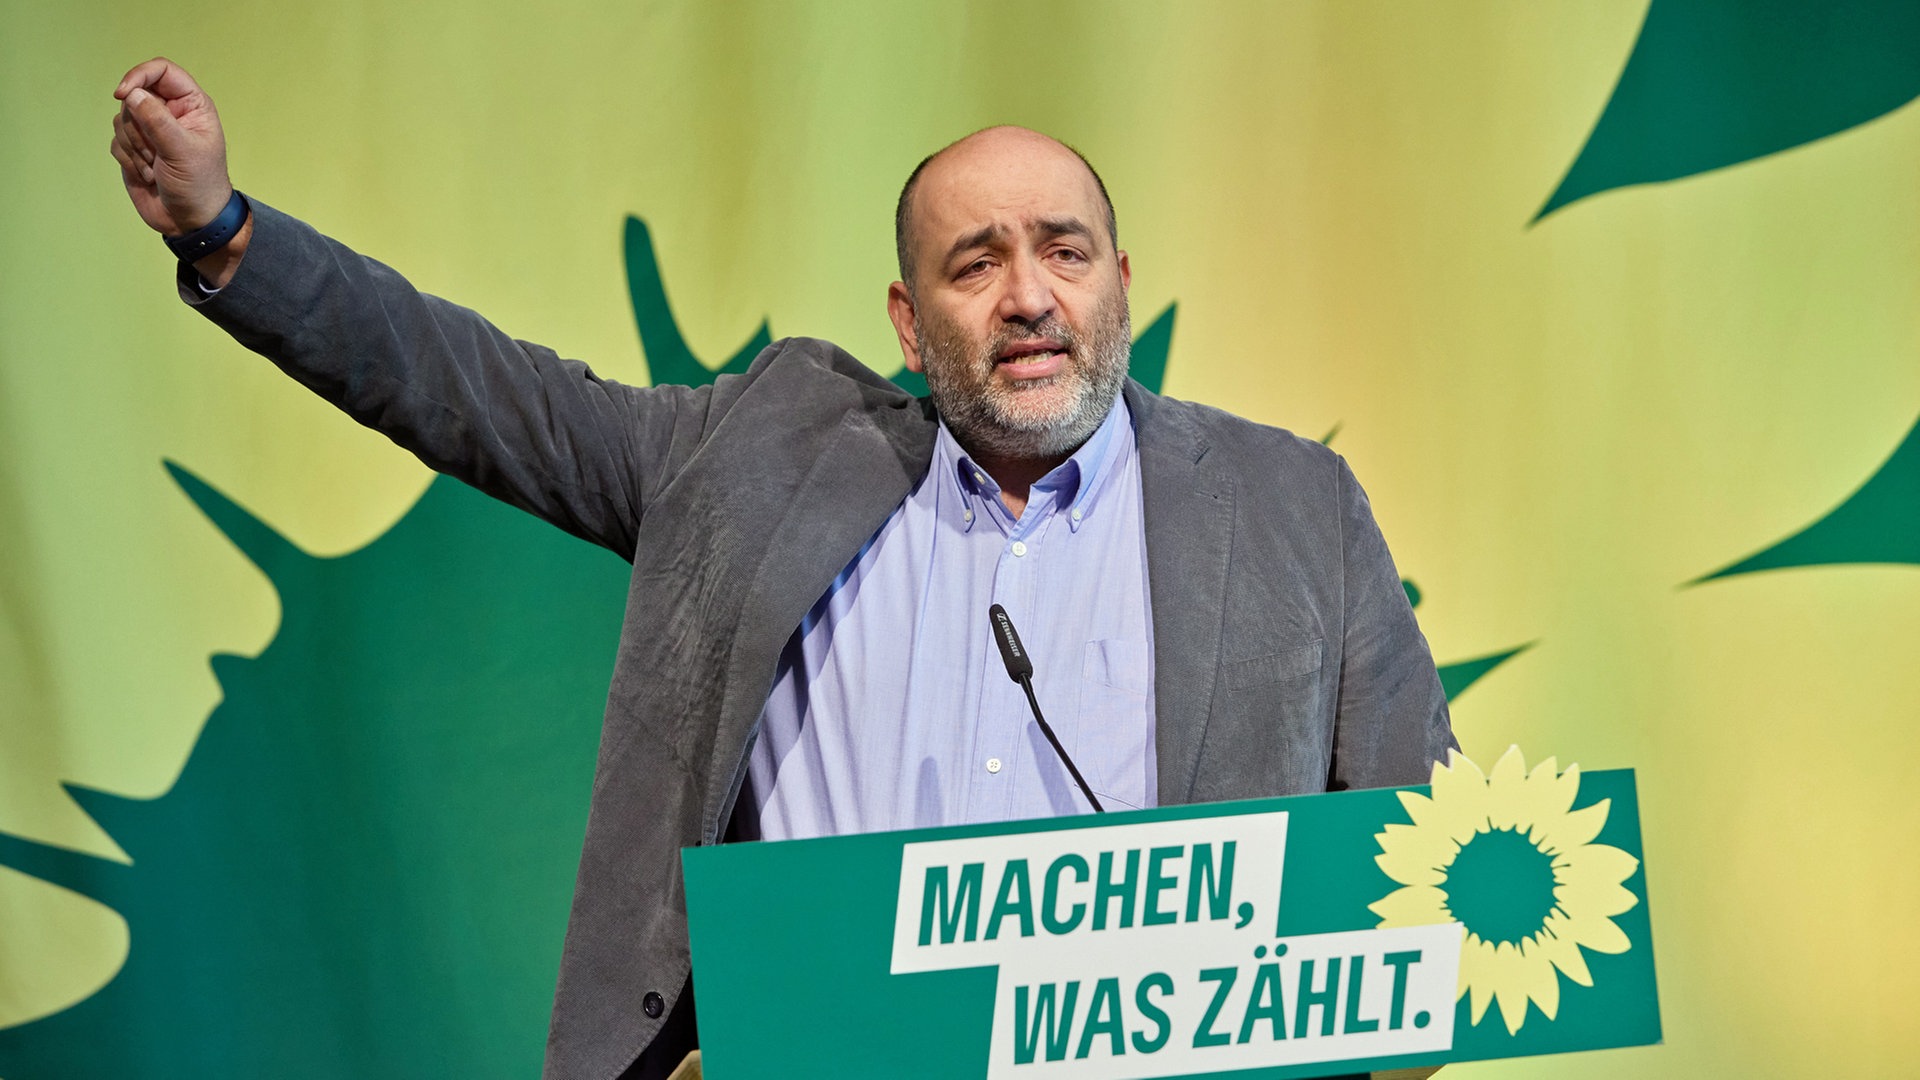 Hamburgs Grüne starten mit Landesparteitag in den Wahlkampf